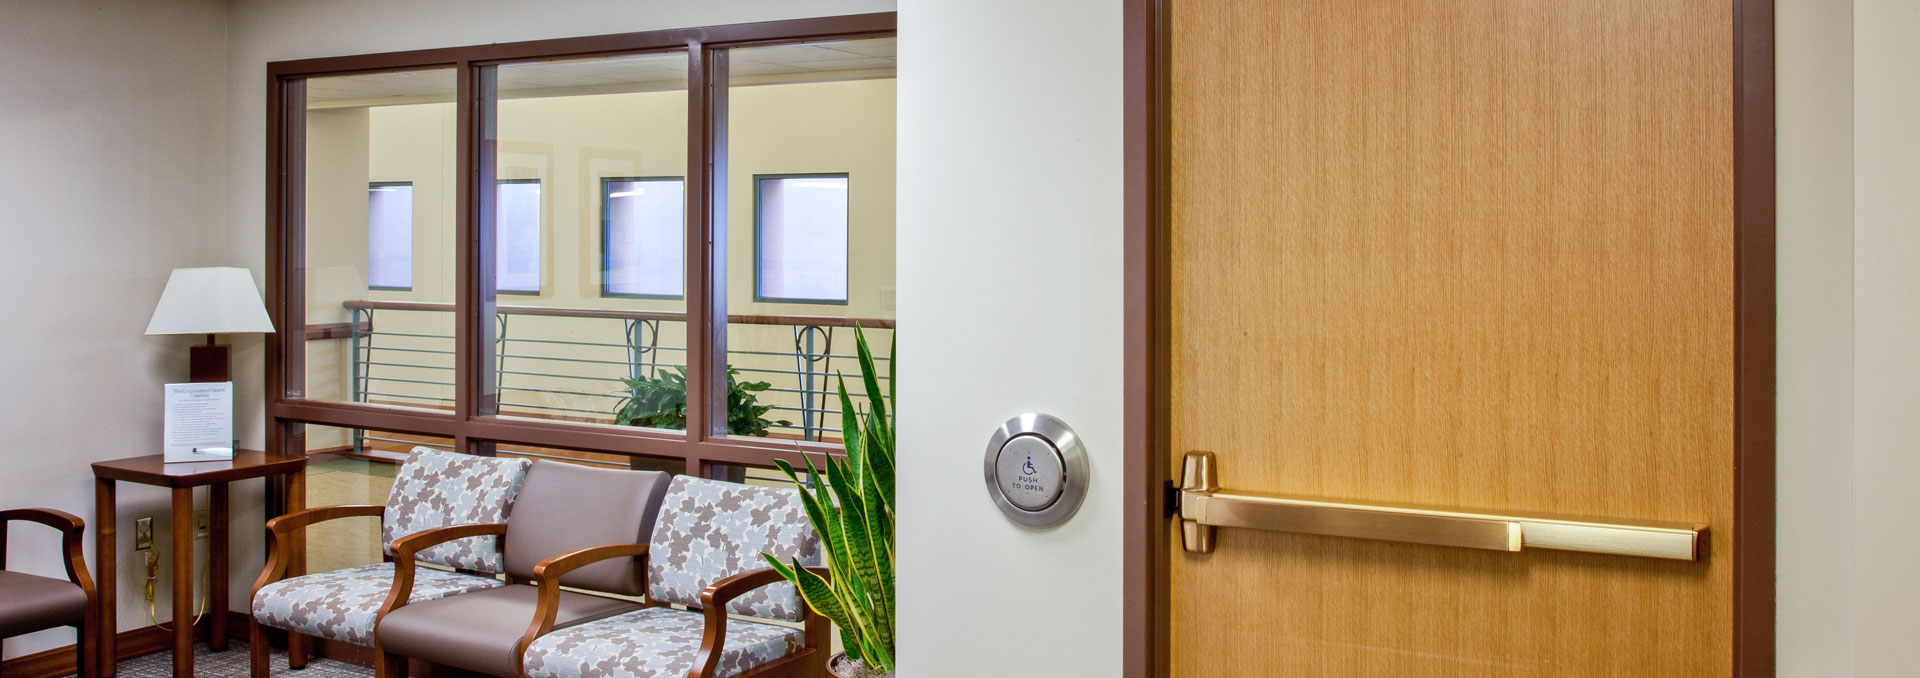 Commercial hollow metal doors, frames, wood doors, and hardware Colorado Doorways, Inc.